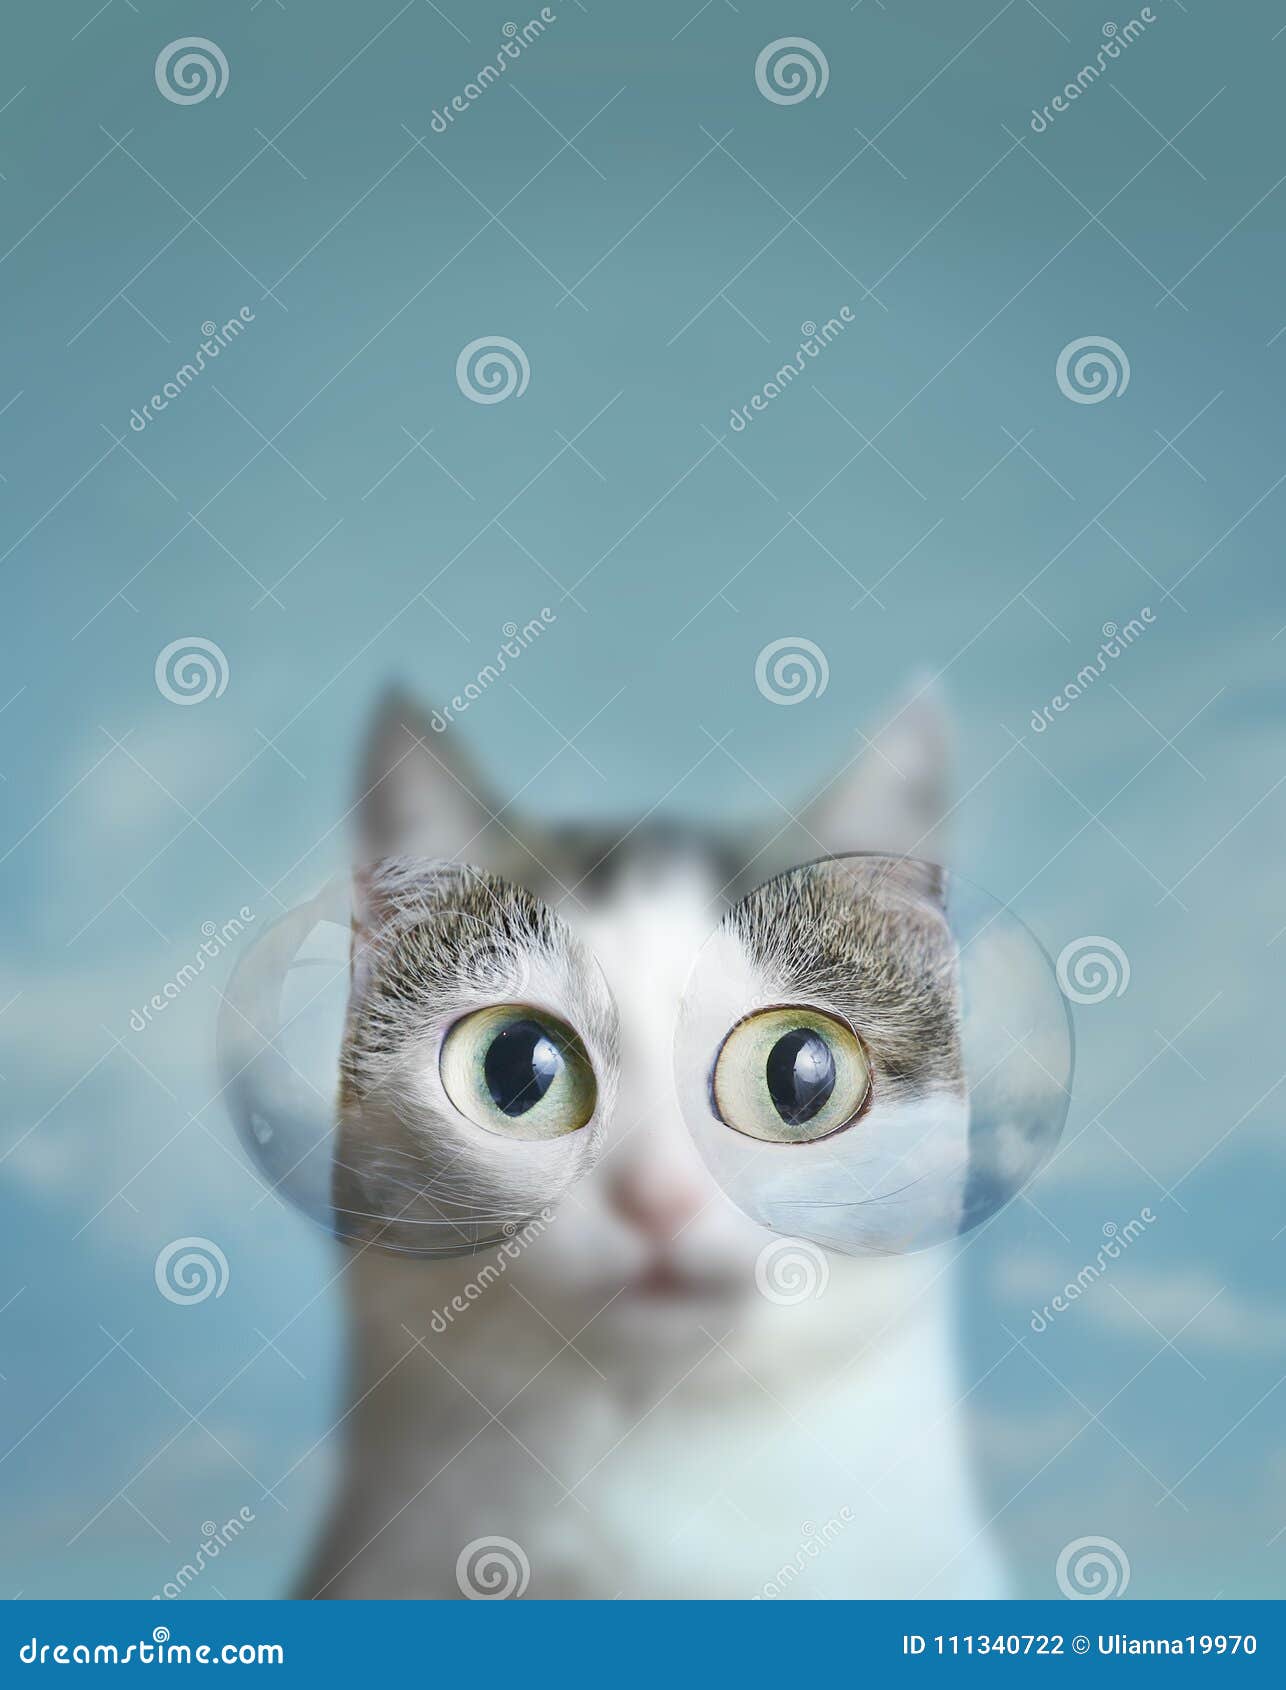 Blauäugige Katze Mit Kontaktlinse Hintergrund Des Bewölkten Himmels Stockfoto - Bild von objektiv, 111340722